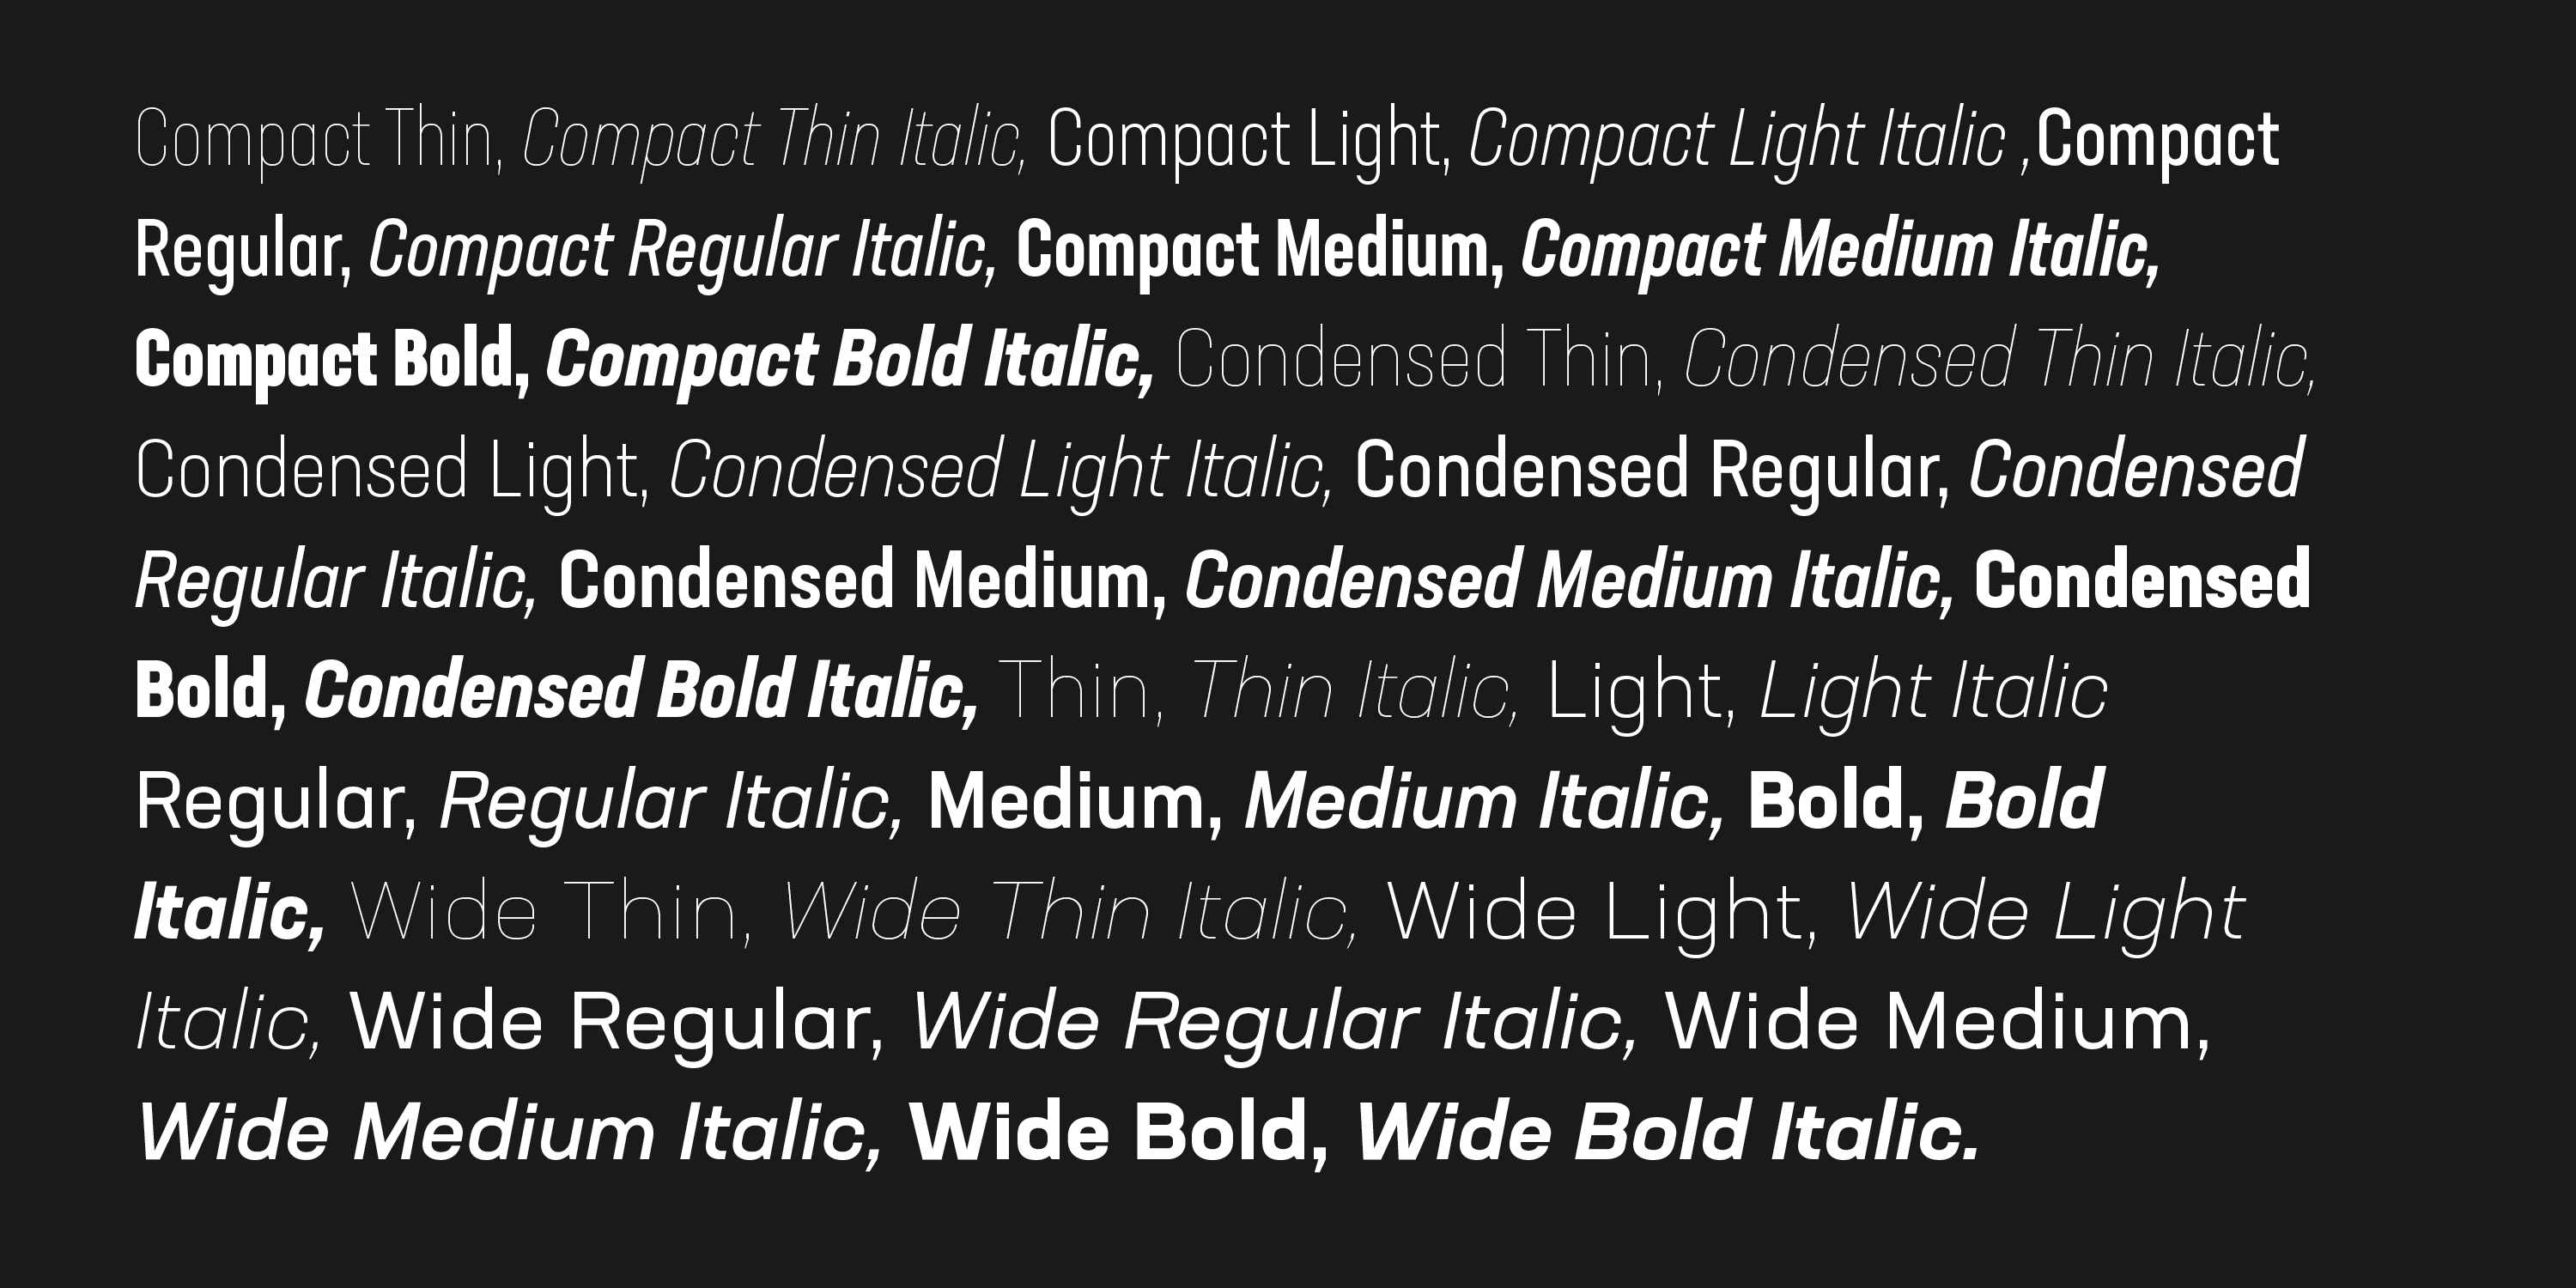 Ejemplo de fuente Neusa Next Pro Compact Medium Italic